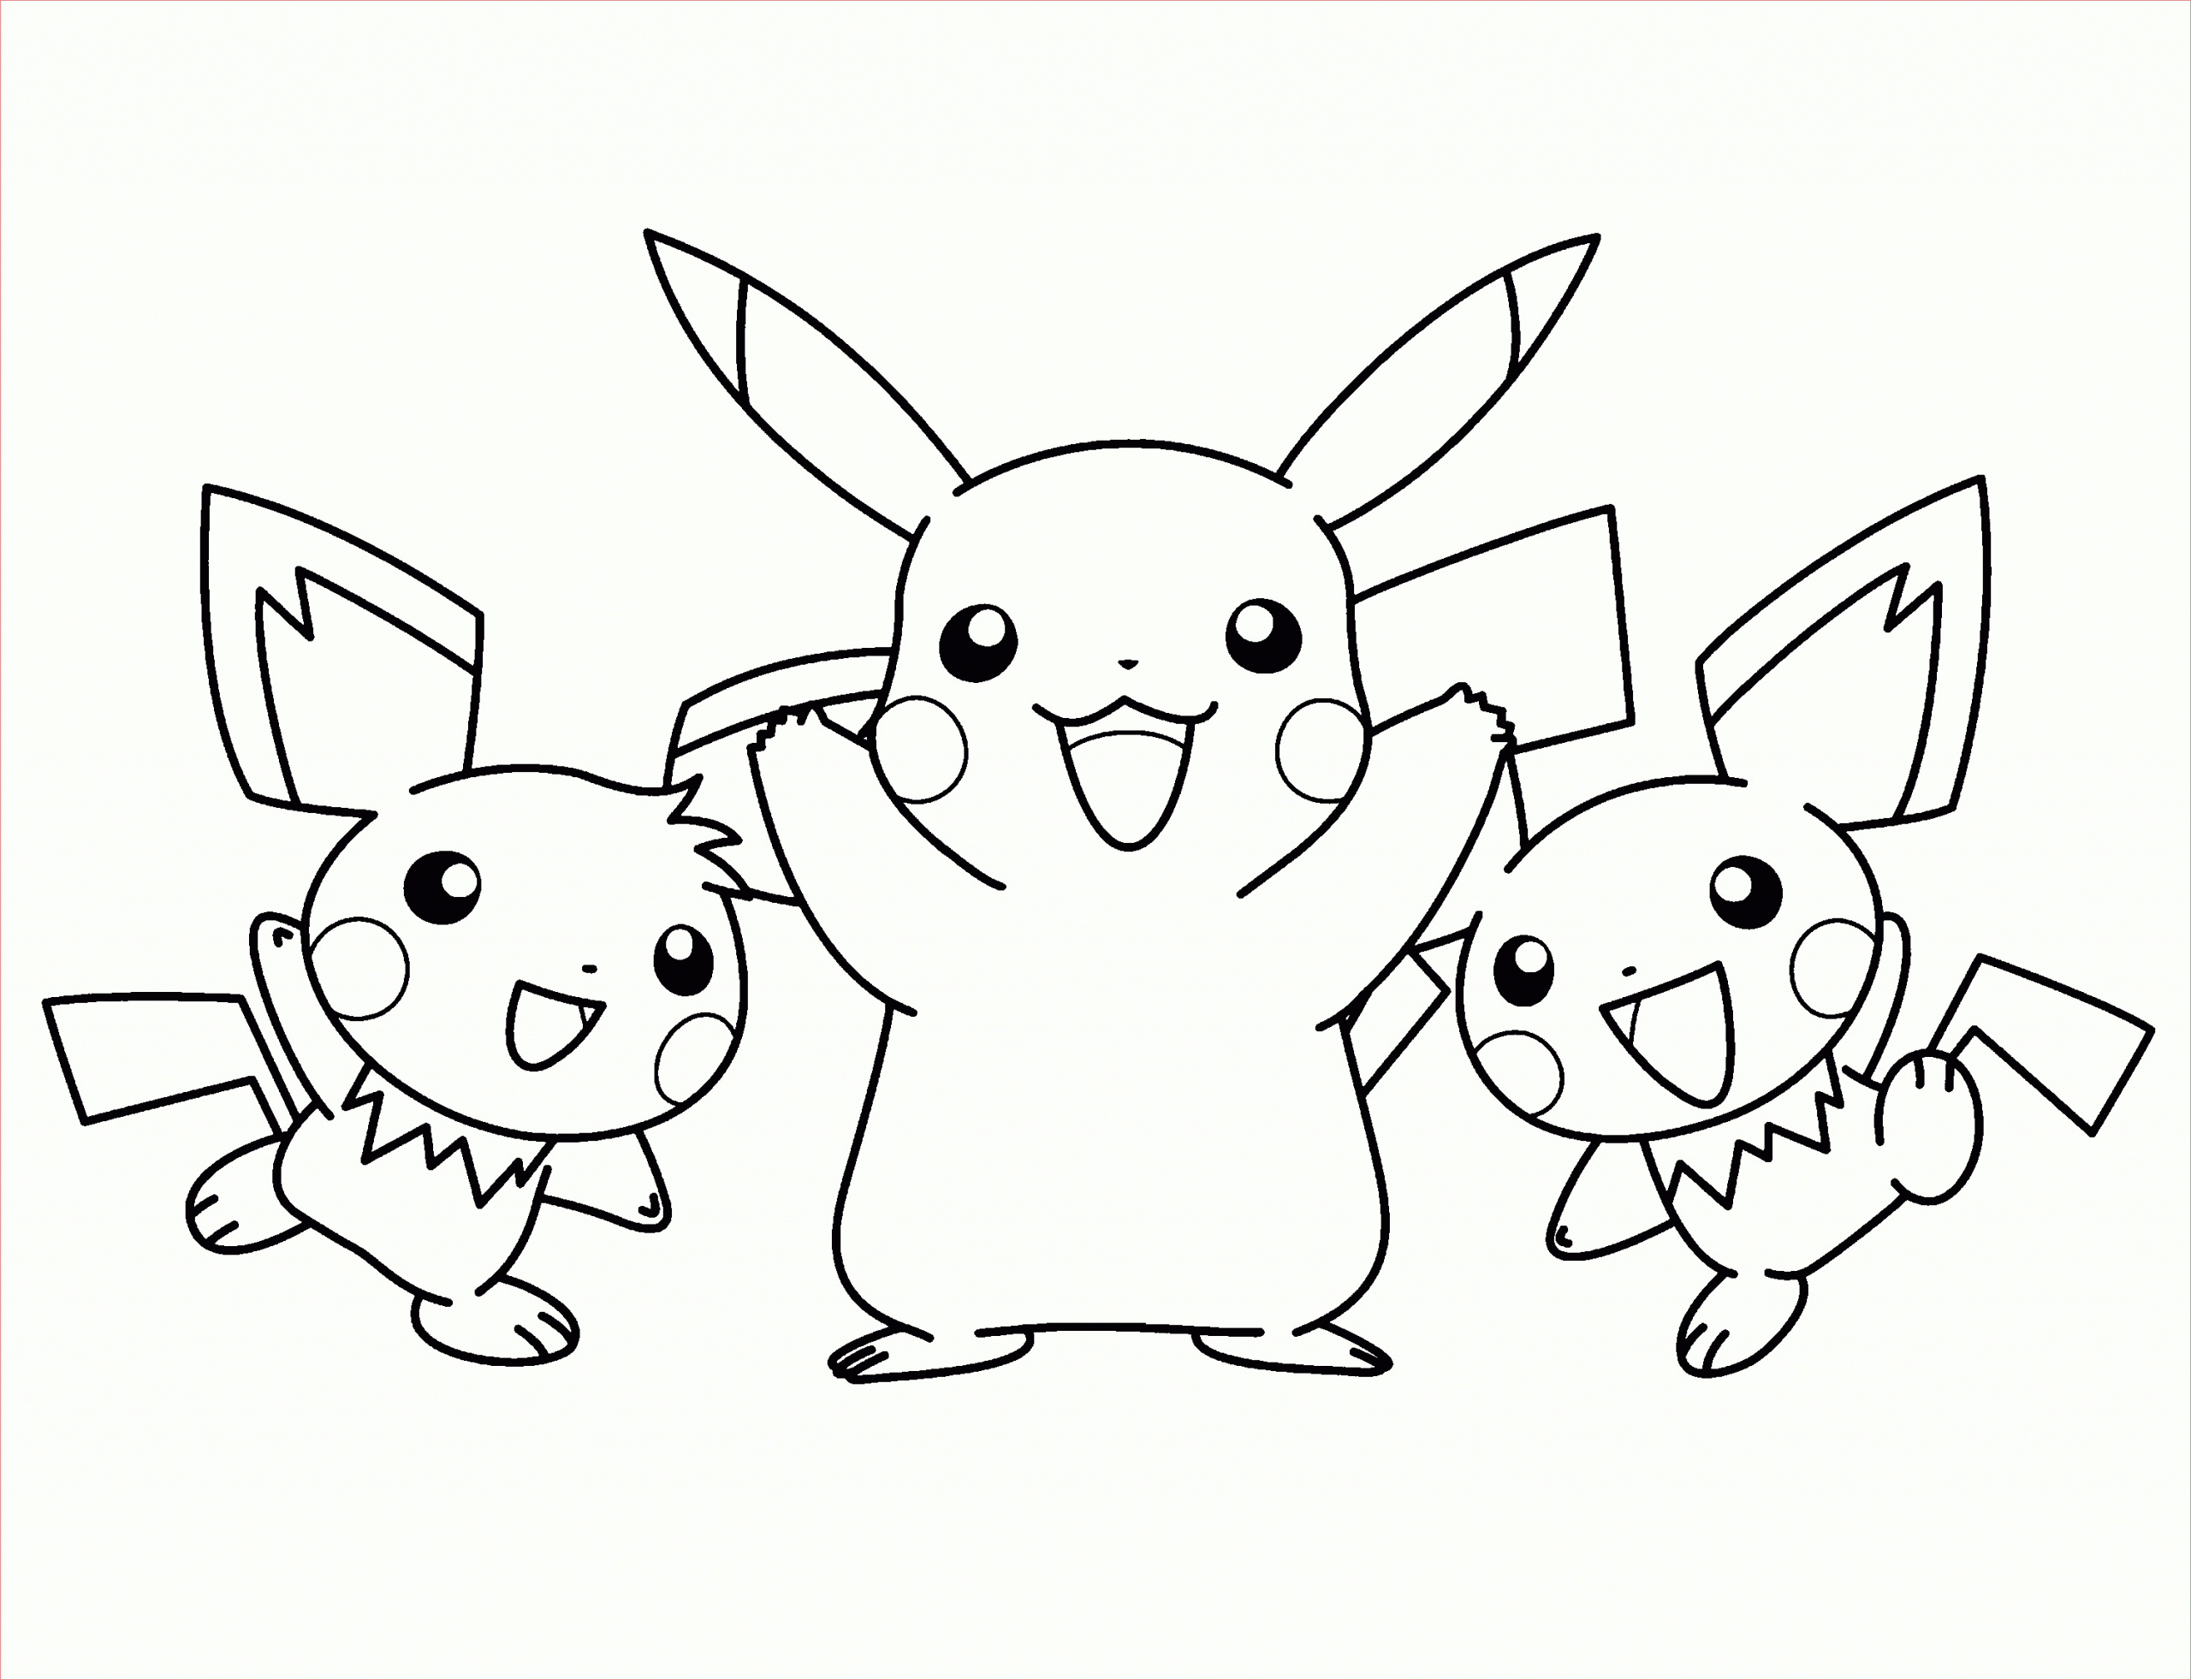 imprimer coloriage pokemon noir et blanc